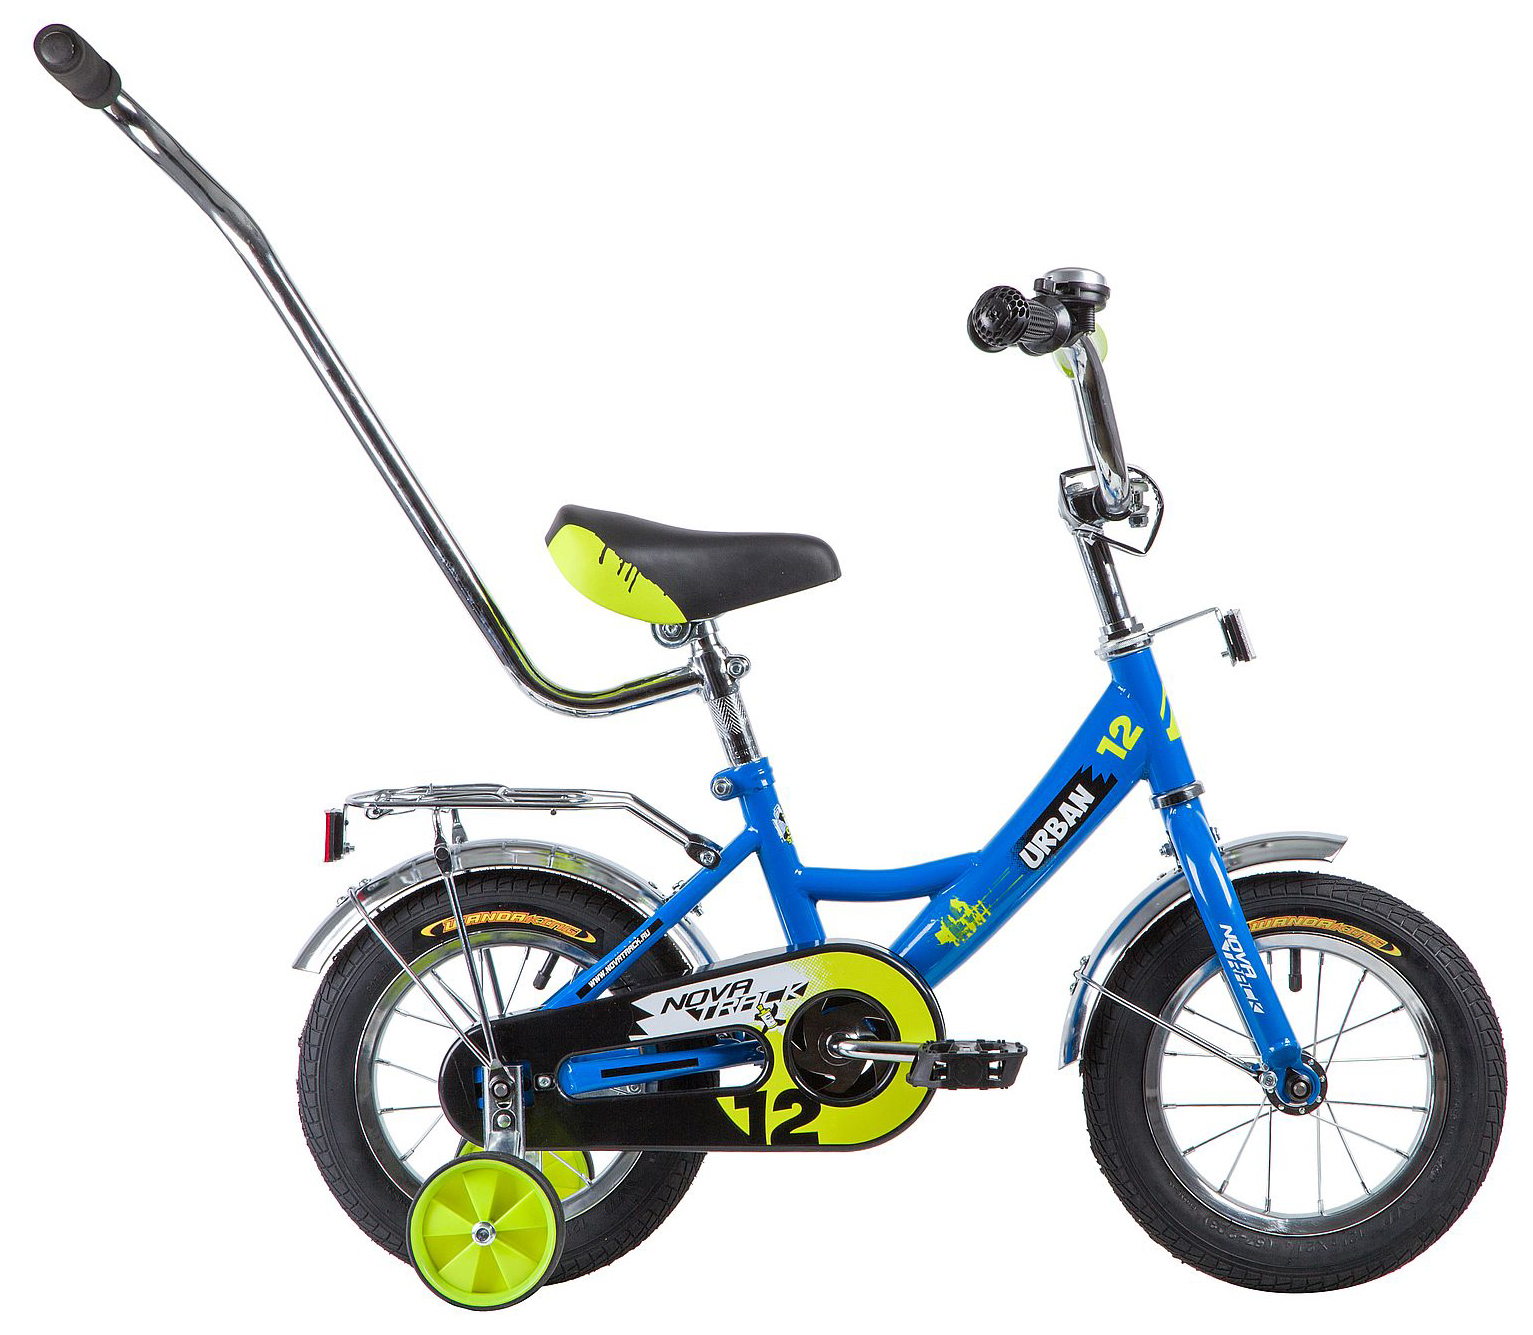  Отзывы о Трехколесный детский велосипед Novatrack Urban 12 2019